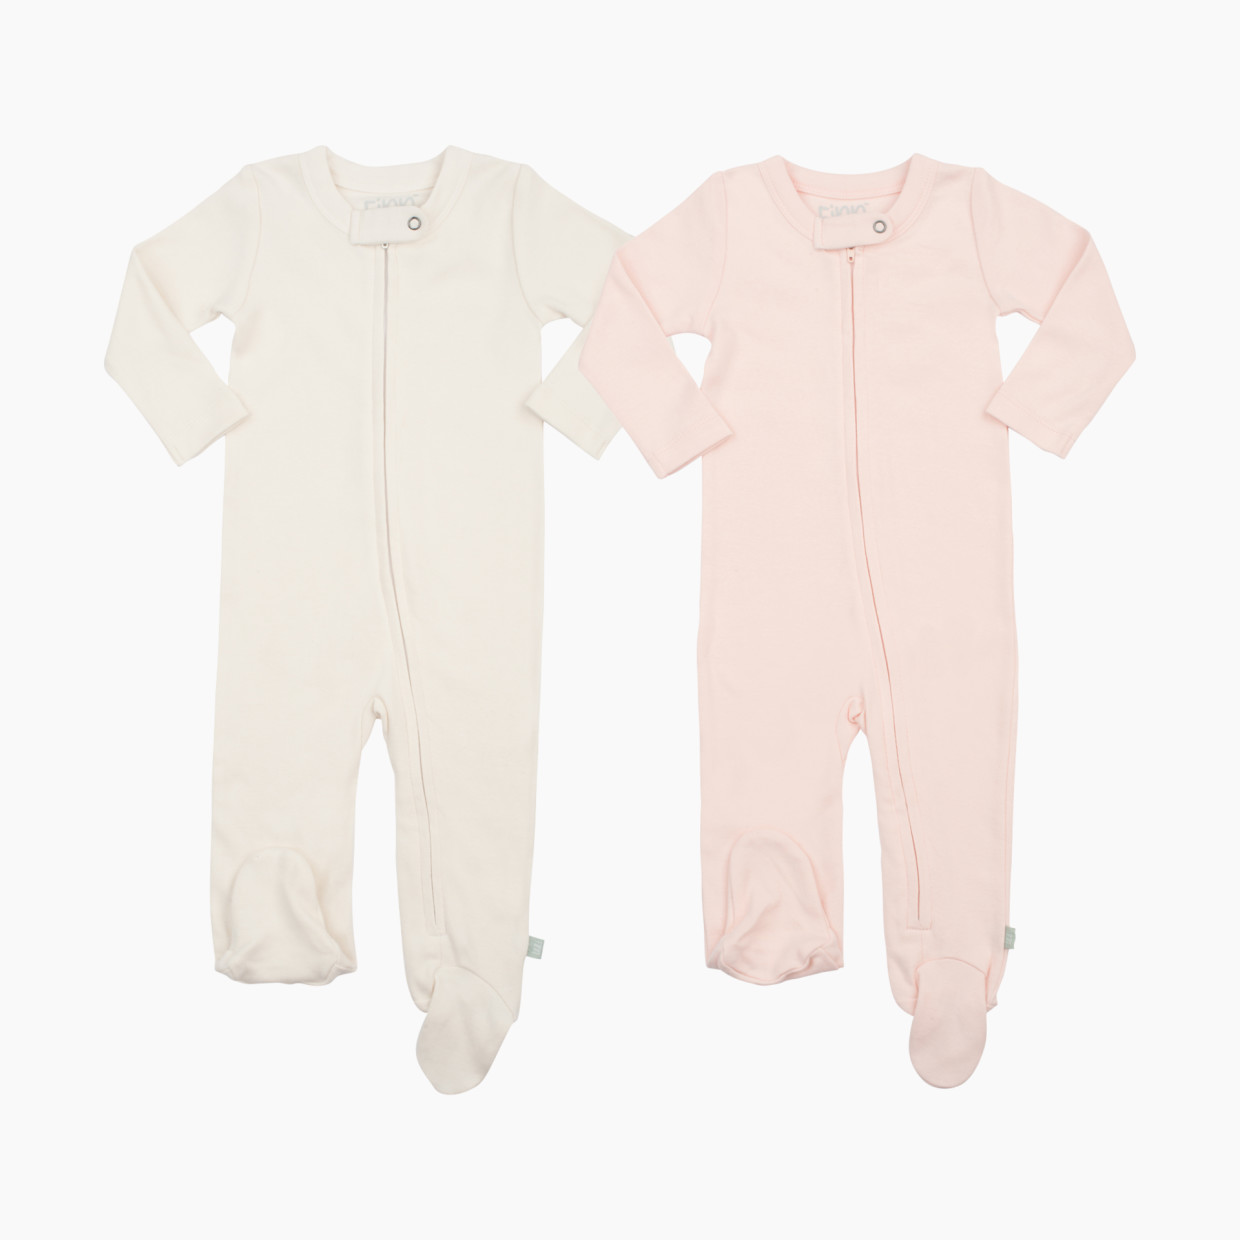 Finn + Emma Organic Cotton Basics Zipper Footie (2 Pack) - Pink/Off White, 0-3 Months.